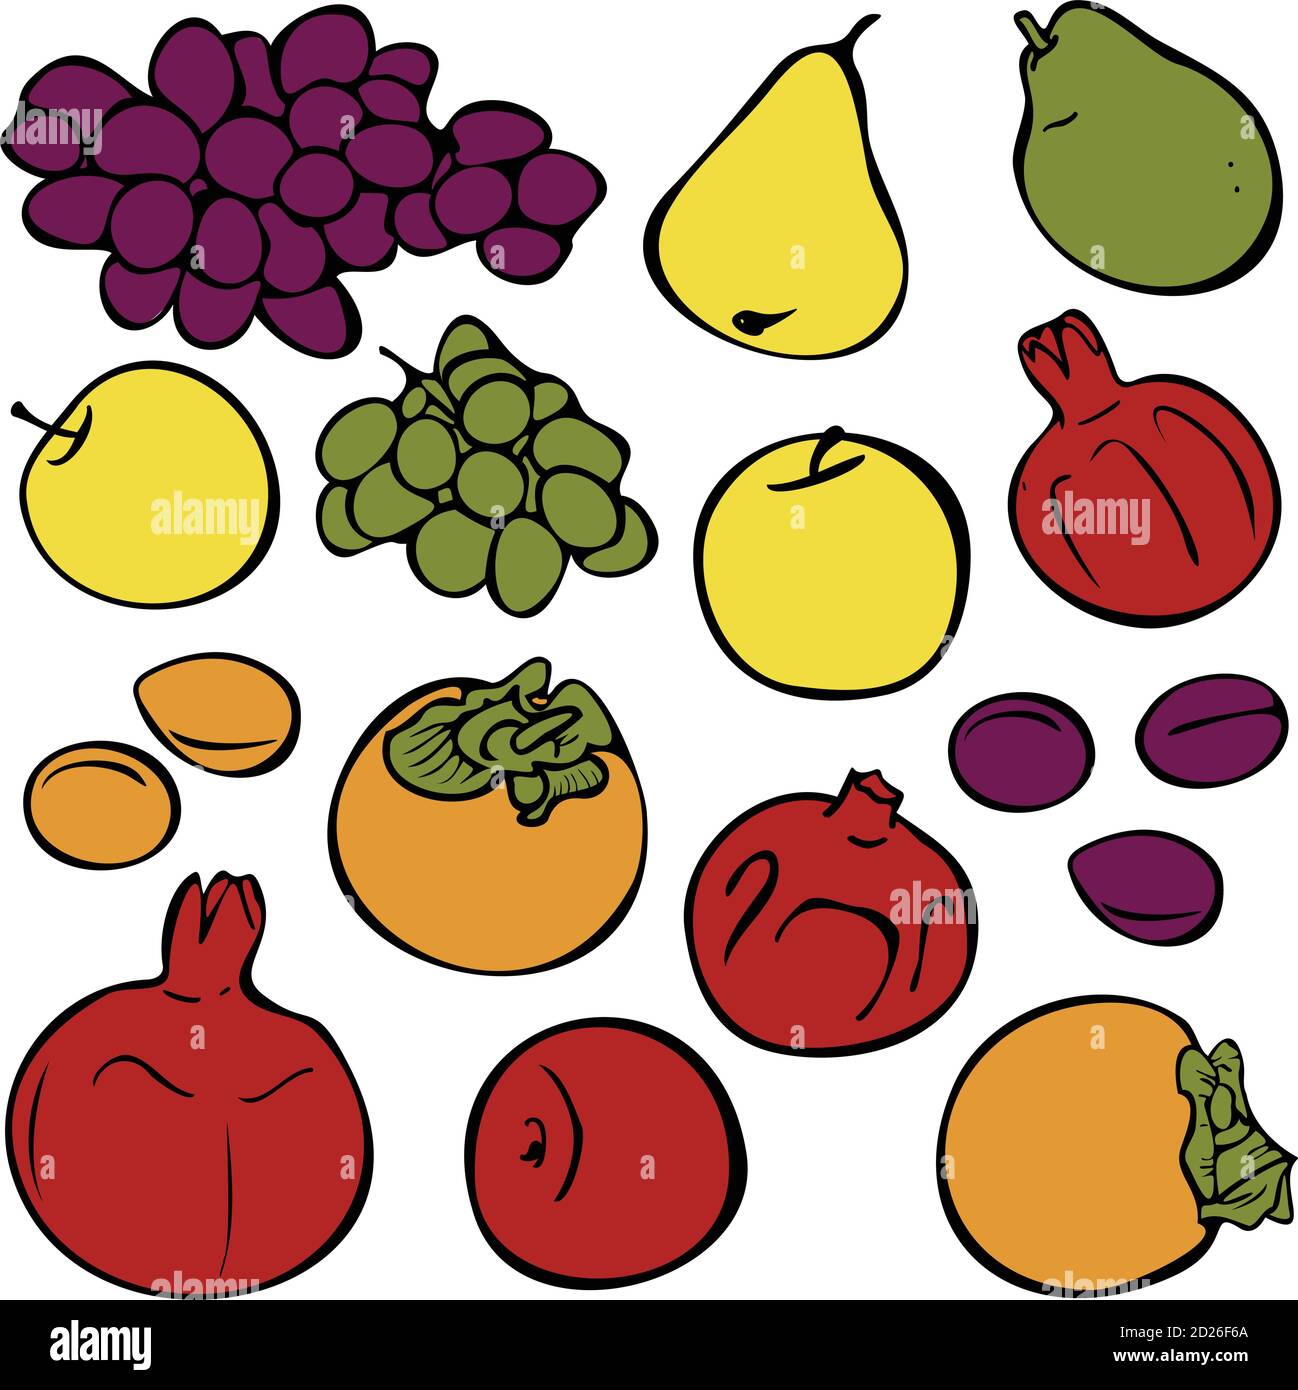 Insieme vettoriale di frutti diversi. Collezione di illustrazioni con uva, pere, mela, melograno, prugne, albicocche e persimmone. Illustrazione Vettoriale